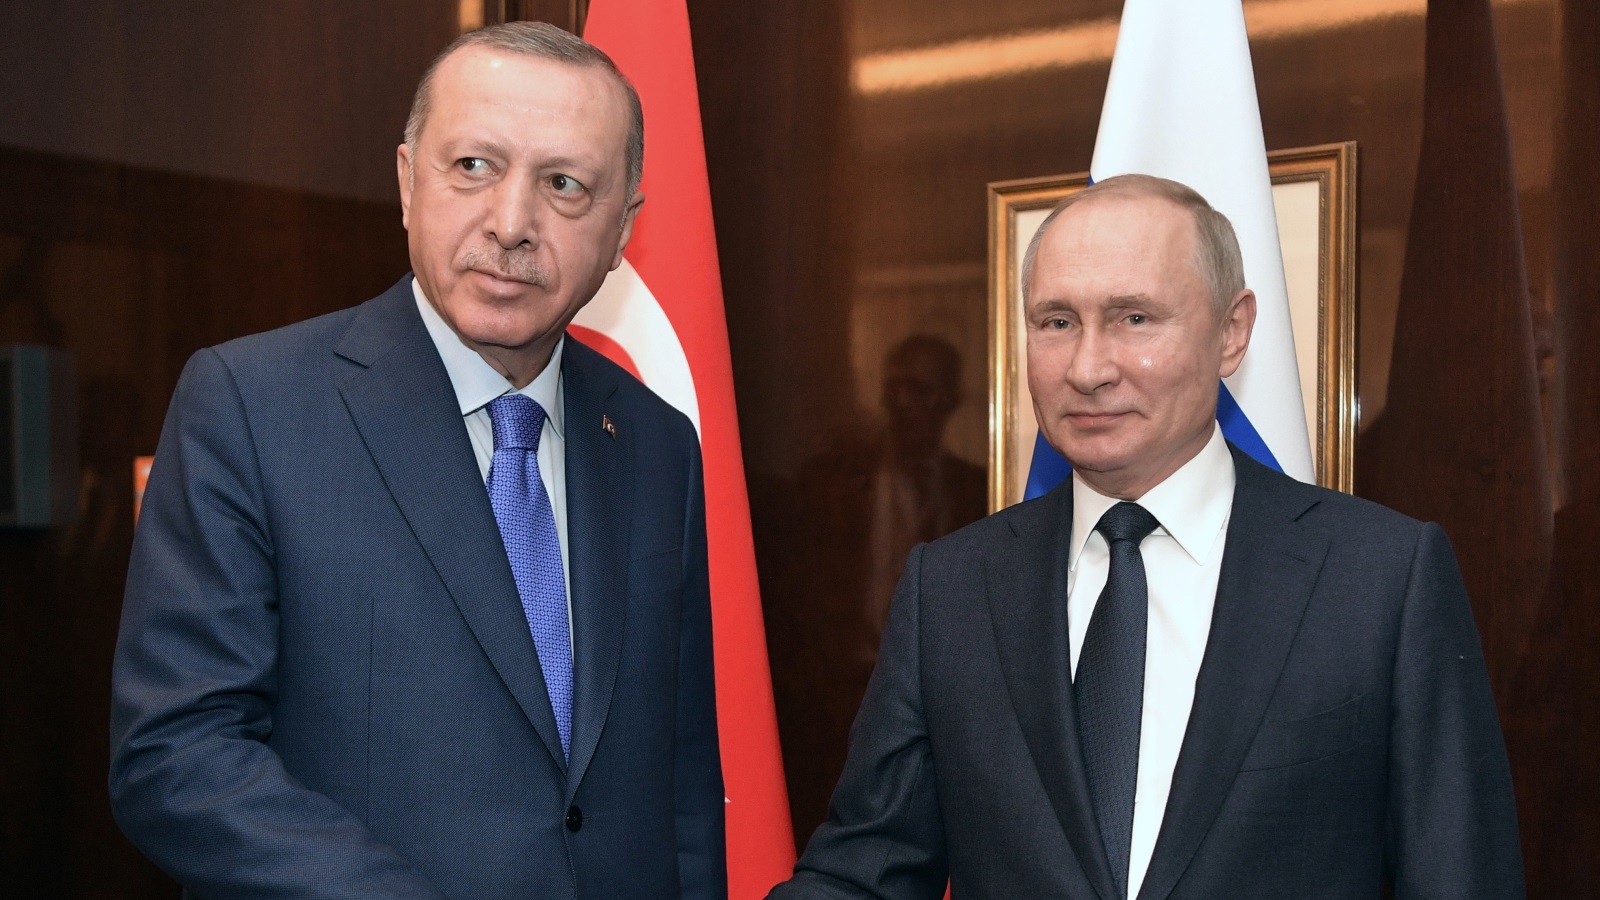 بدل قمة رباعية، أردوغان تحدث عن إمكانية عقد قمة ثنائية مع بوتين في مارس/آذار المقبل (رويترز)